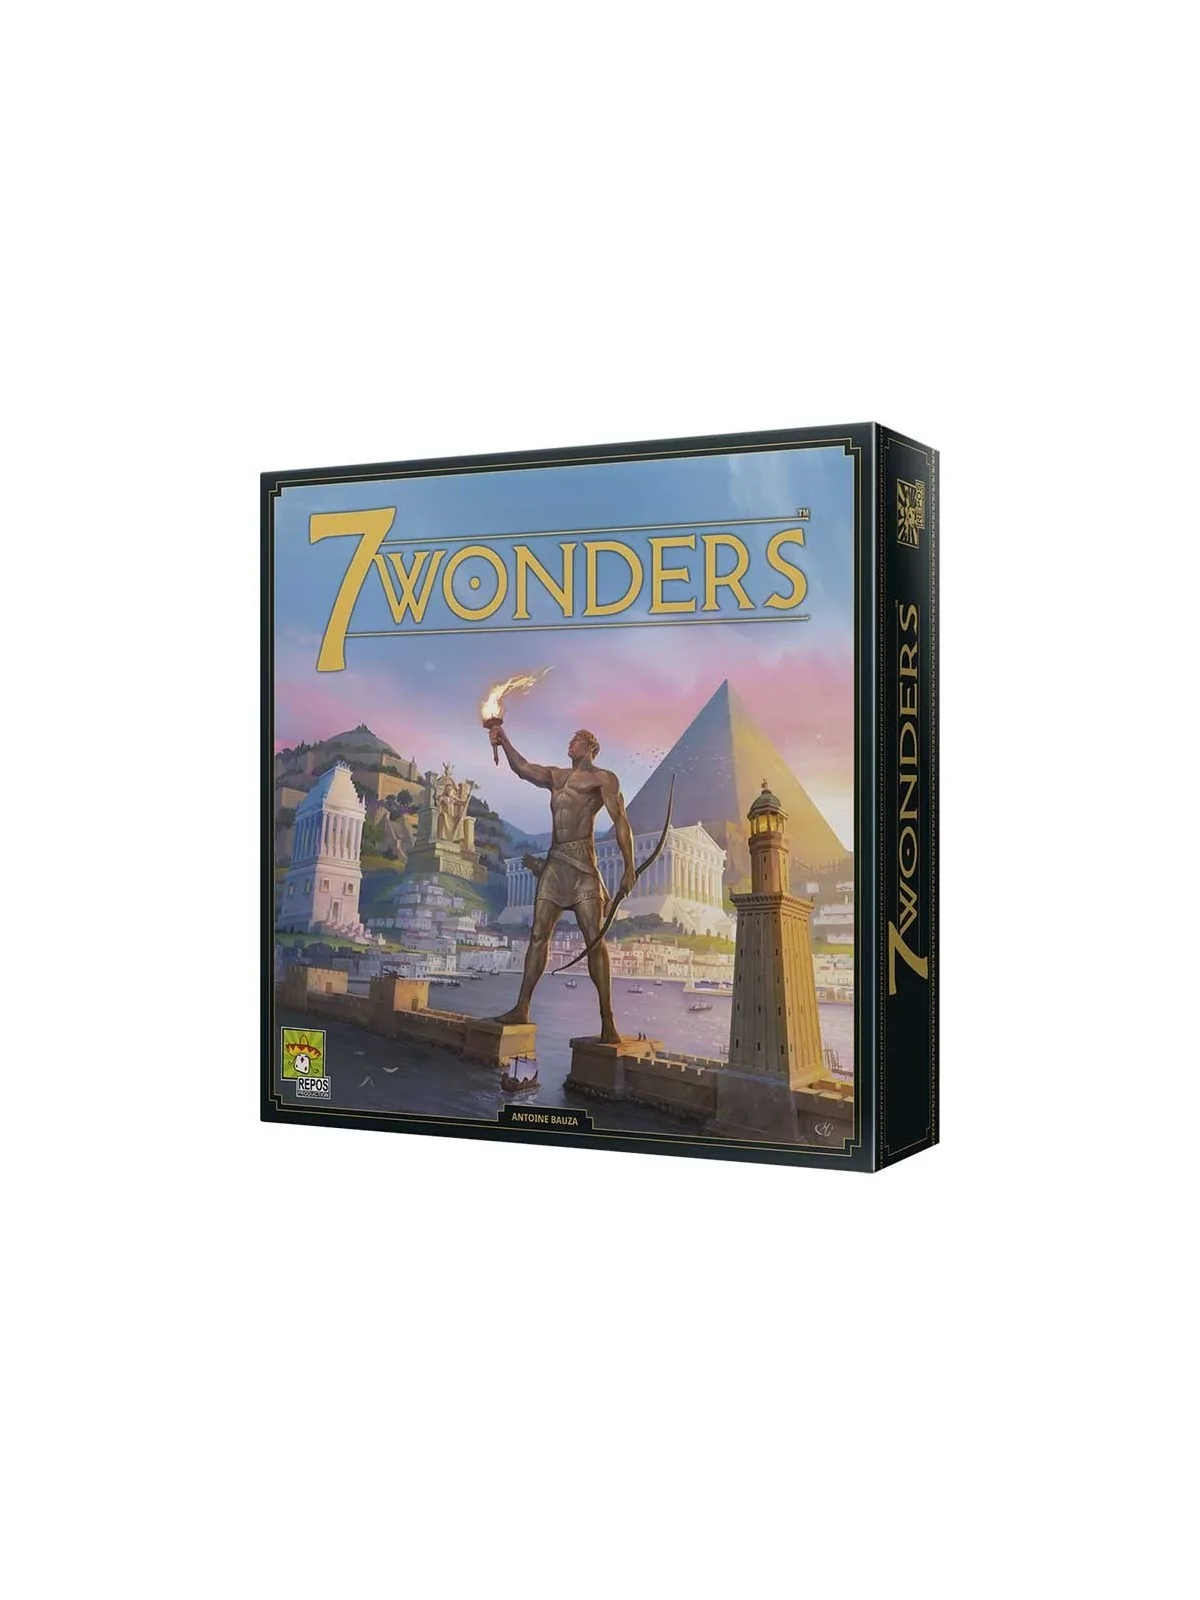 Comprar 7 Wonders Nueva Edición barato al mejor precio 40,49 € de Repo